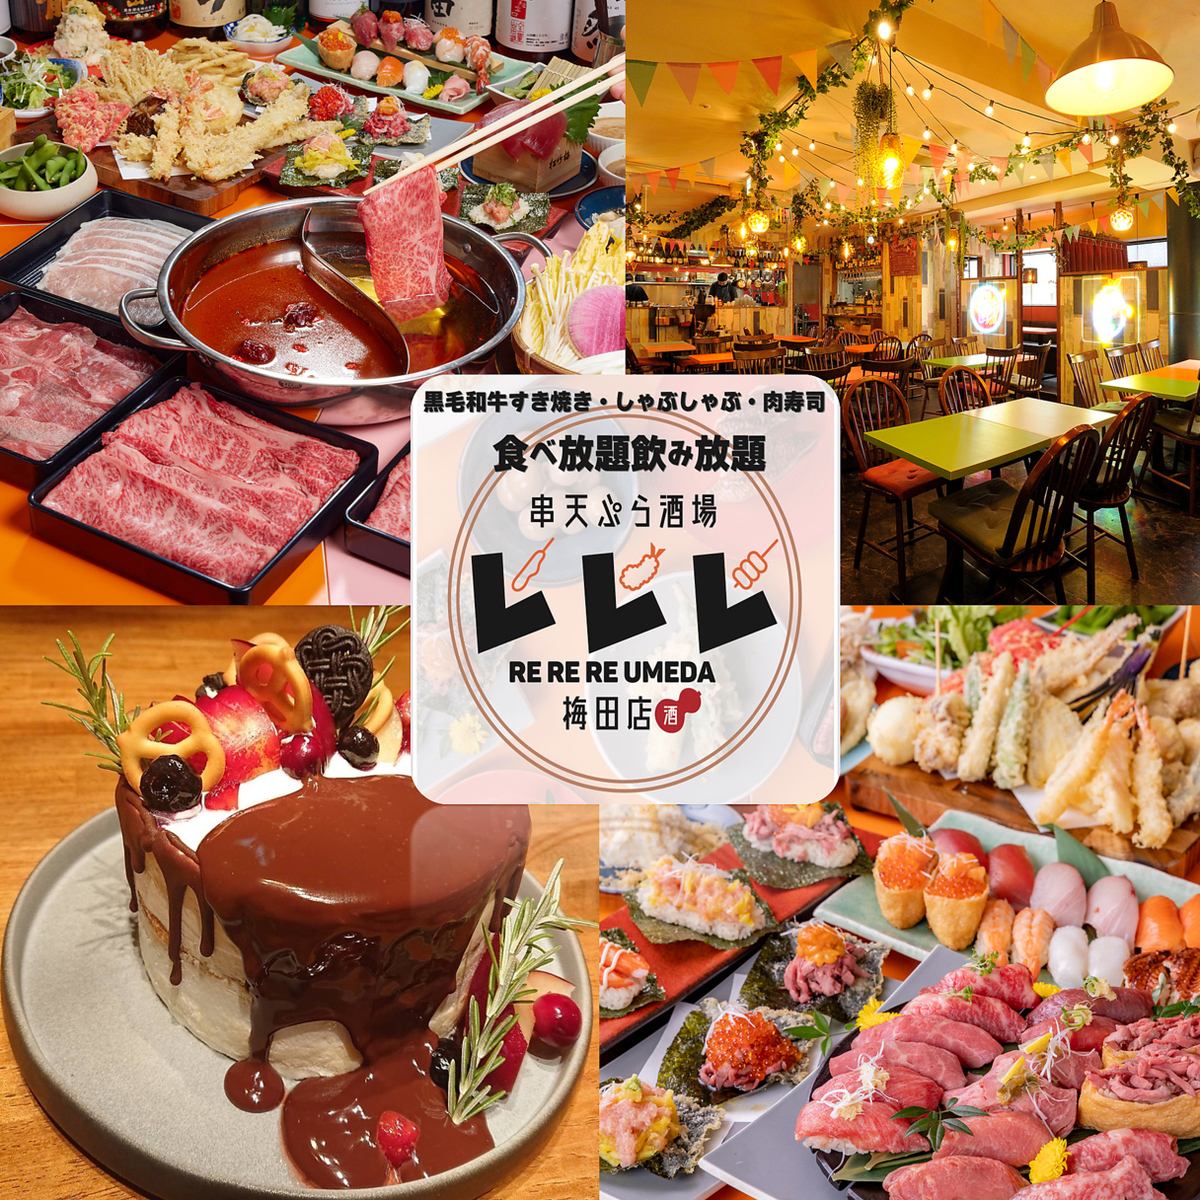 肉类寿司、海鲜寿司、A5级黑毛和牛涮涮锅、寿喜烧自助餐！